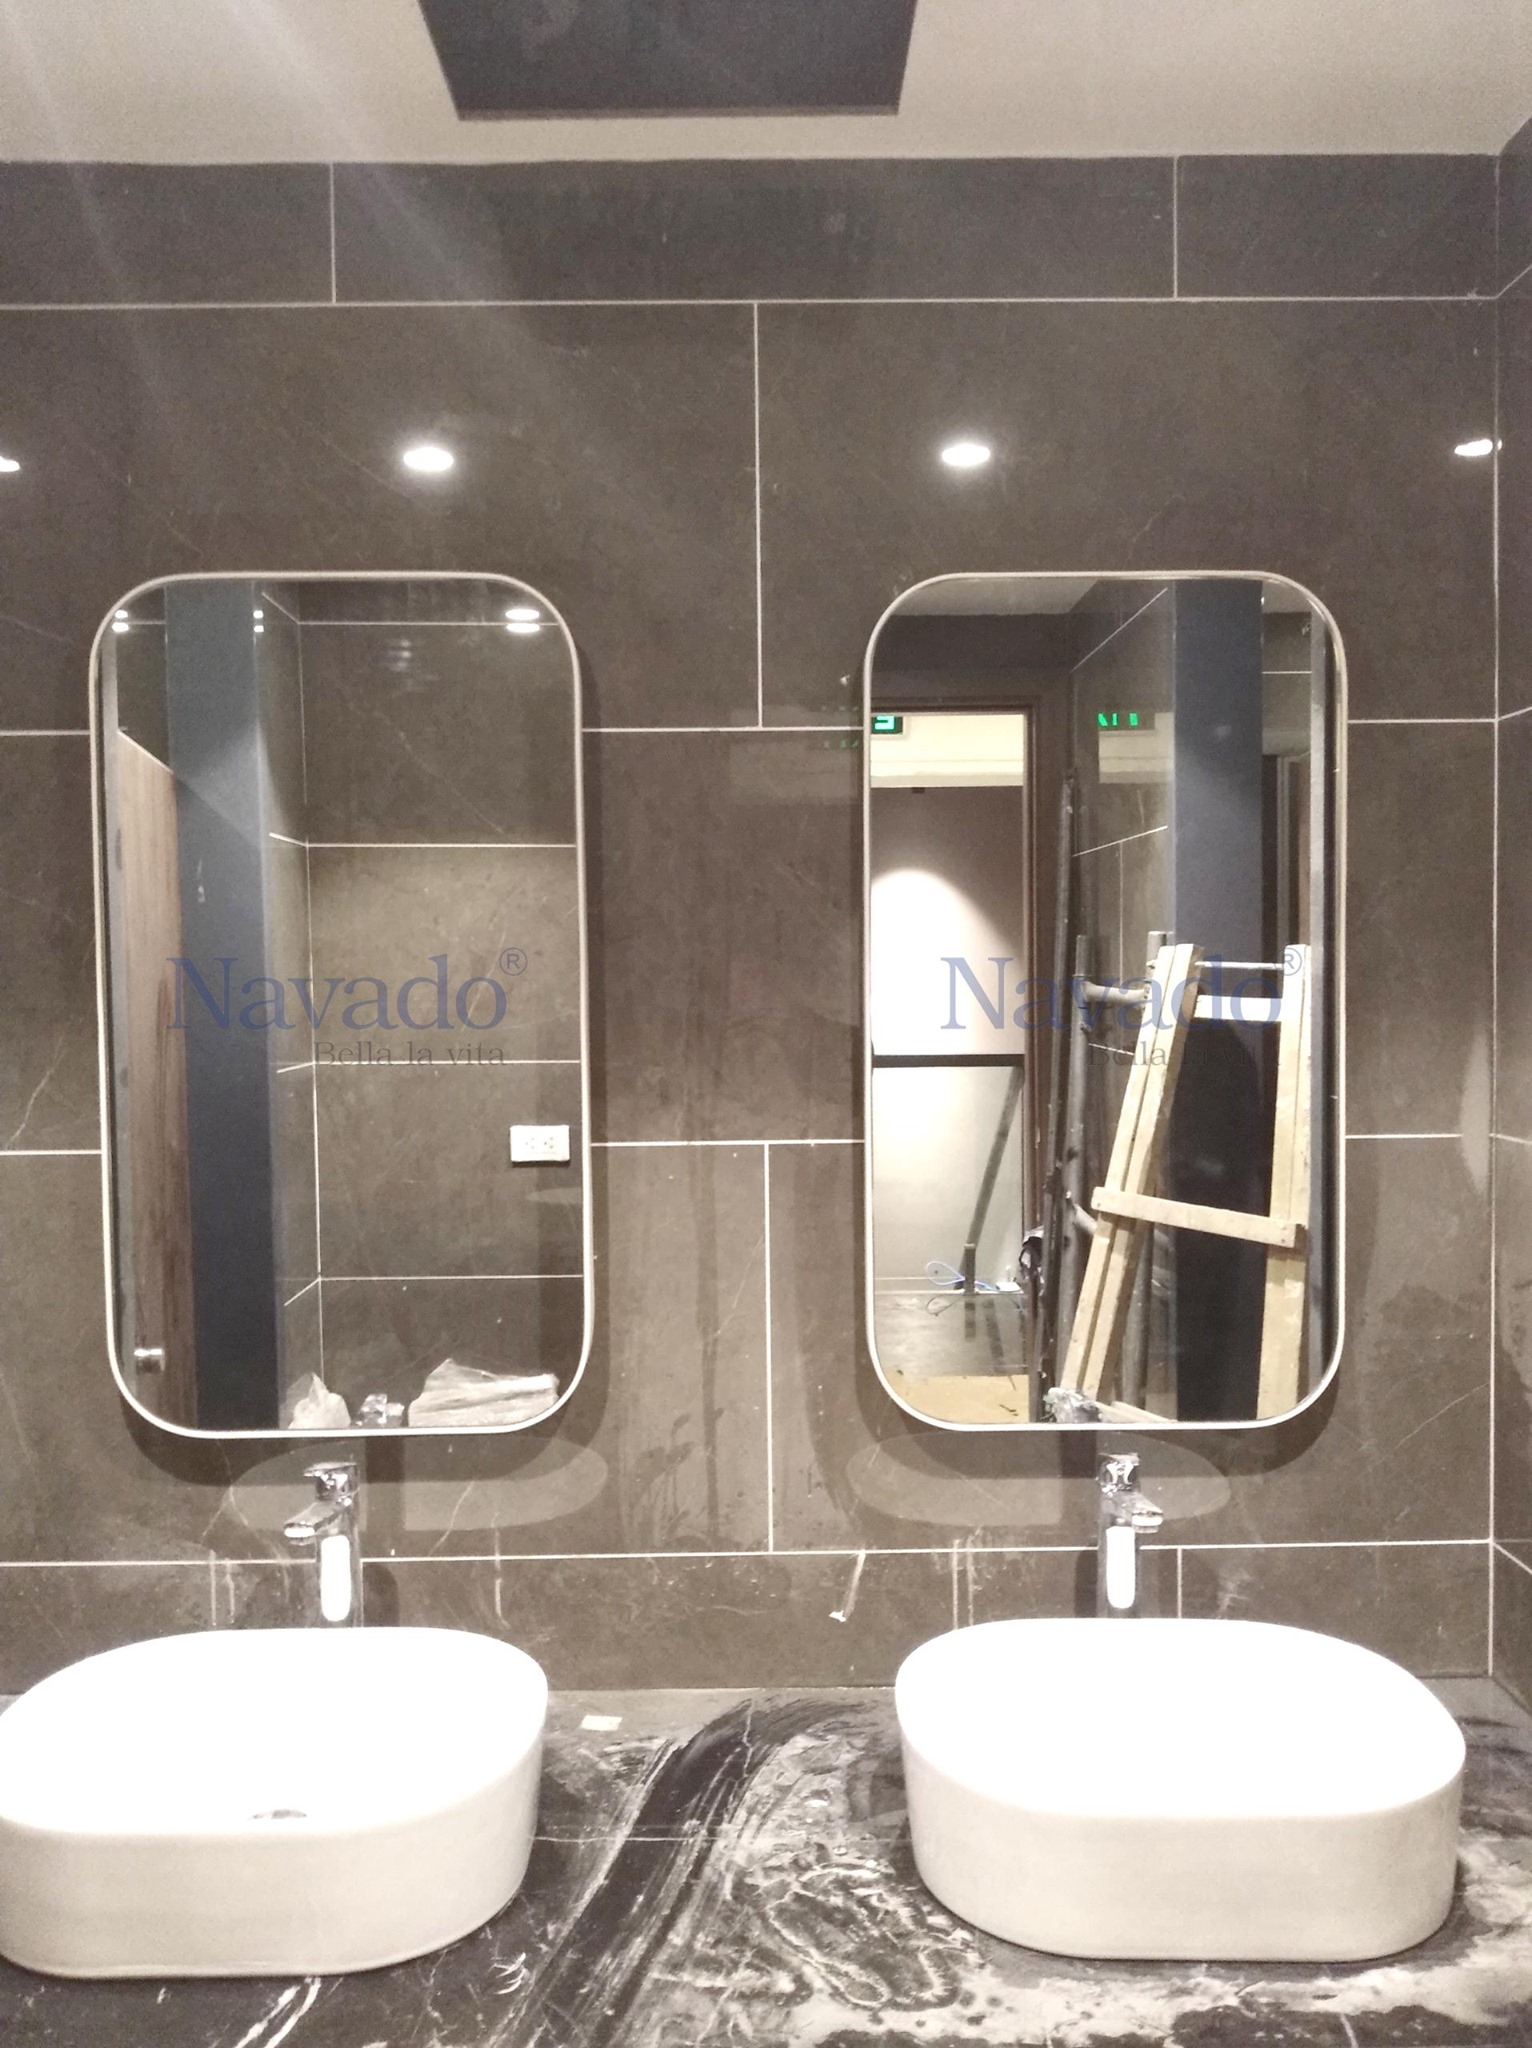 Khung chữ nhật màu trắng kem đẹp mắt, gương phòng tắm Navado này sẽ chắc chắn làm cho phòng tắm của bạn trở nên bắt mắt hơn. Với chất liệu cao cấp và thiết kế đặc biệt, chiếc gương này sẽ trở thành lựa chọn hoàn hảo cho không gian của bạn.